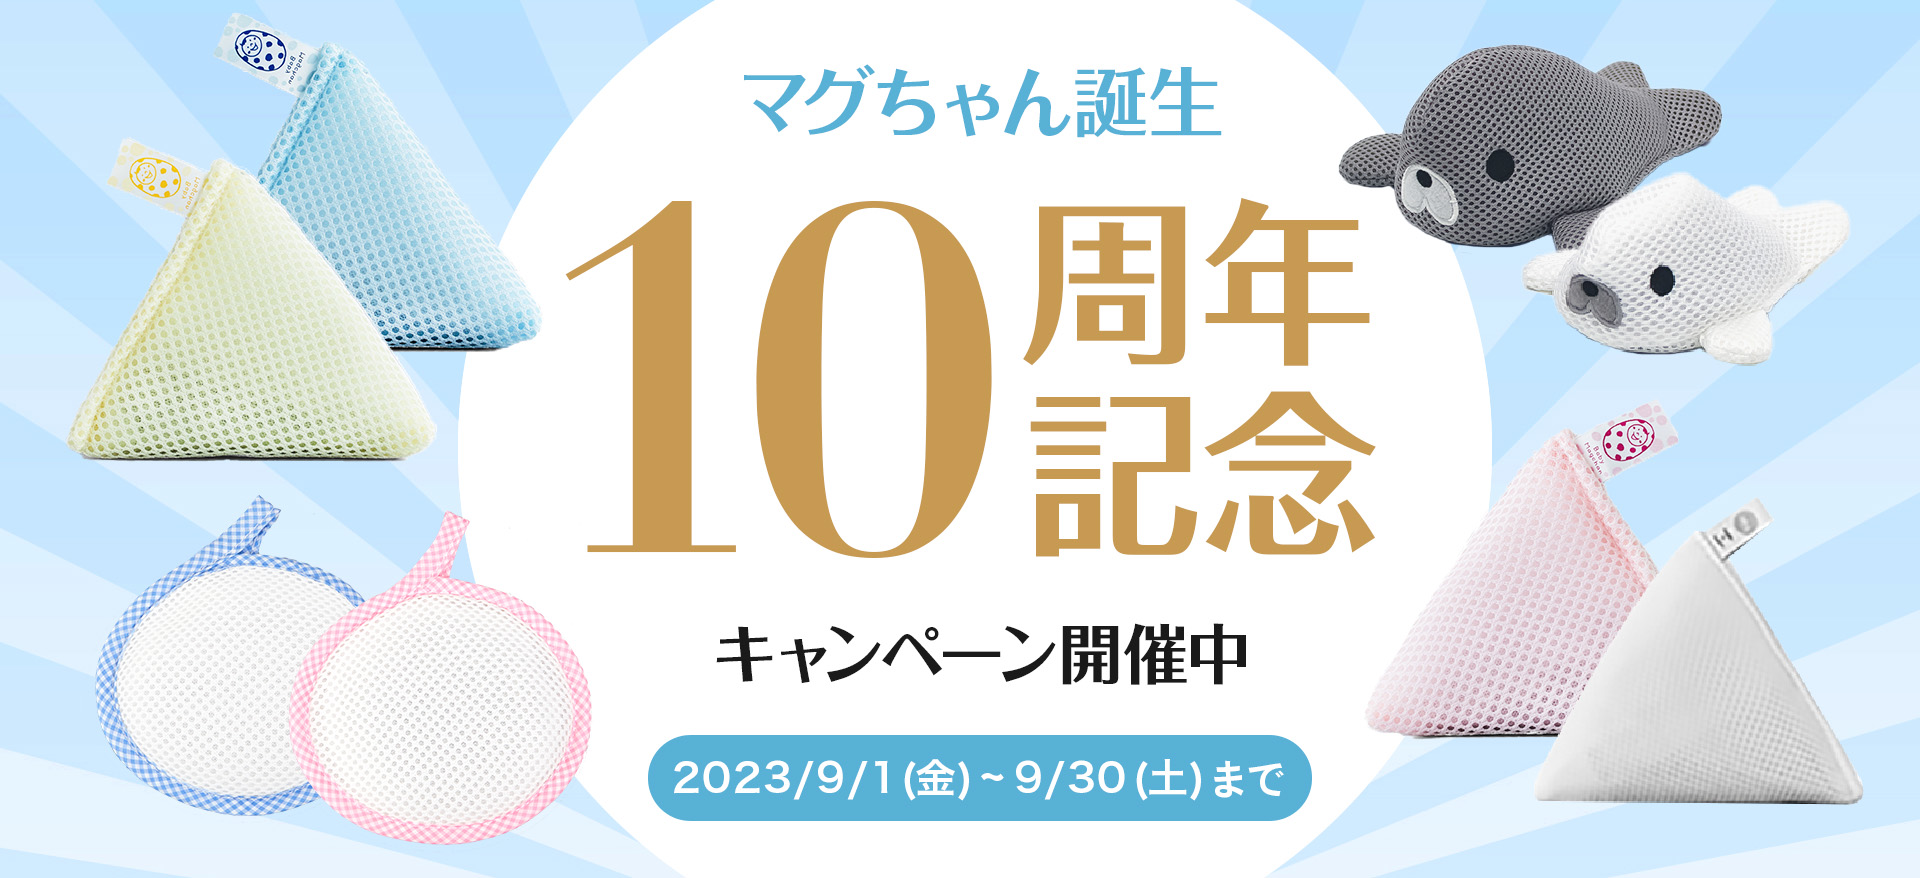 マグちゃん誕生 10周年記念キャンペーン